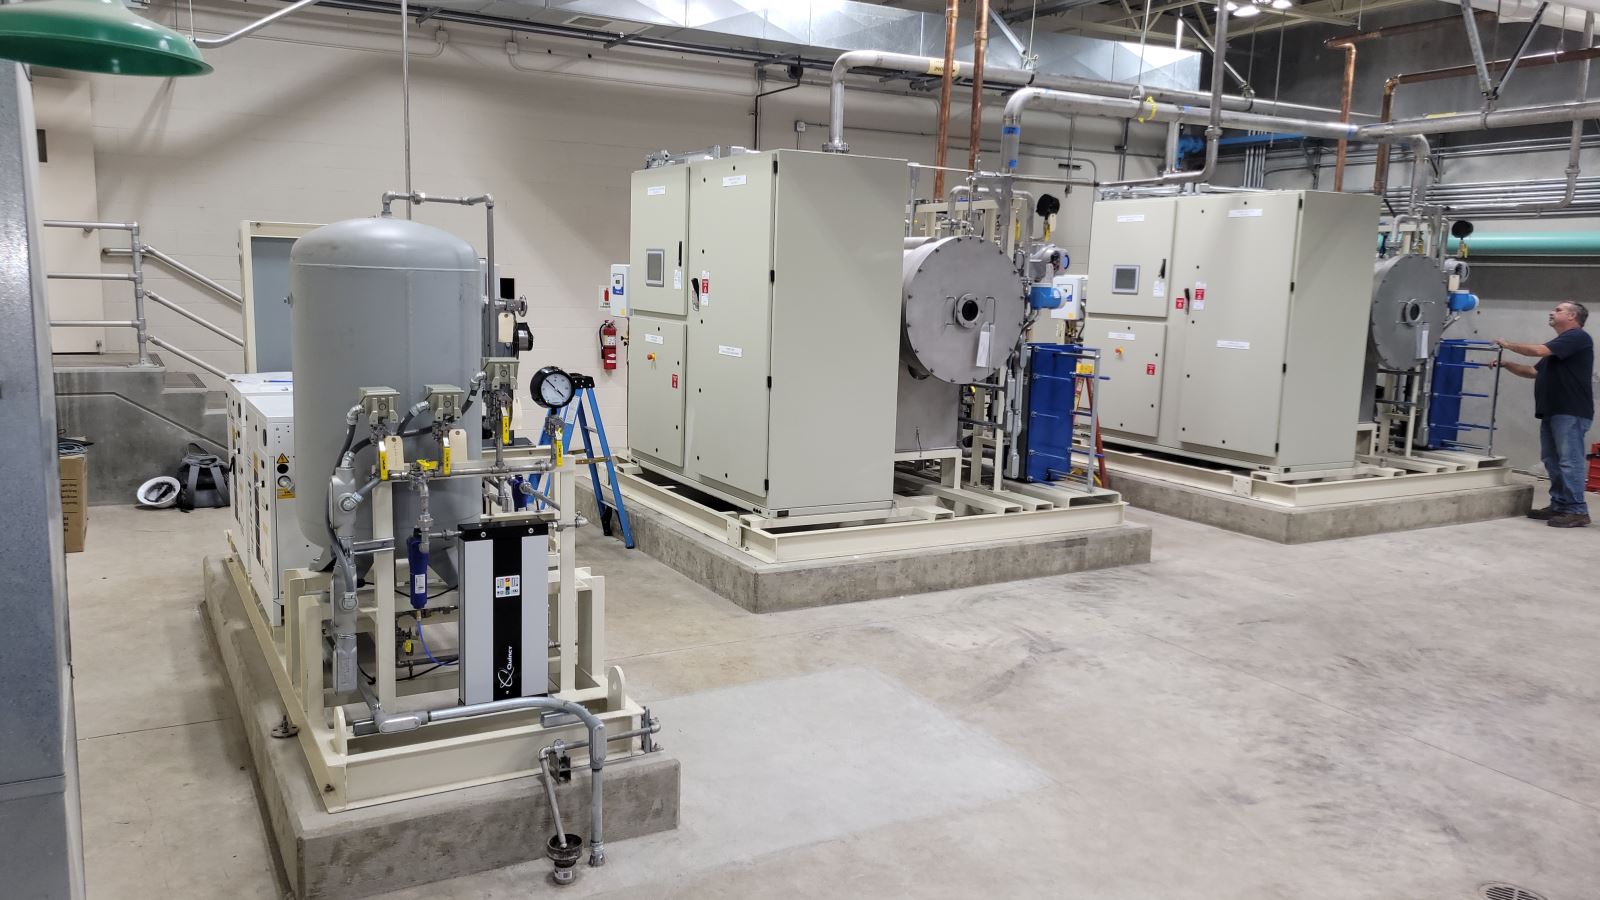 Photo of installed ozone generator units